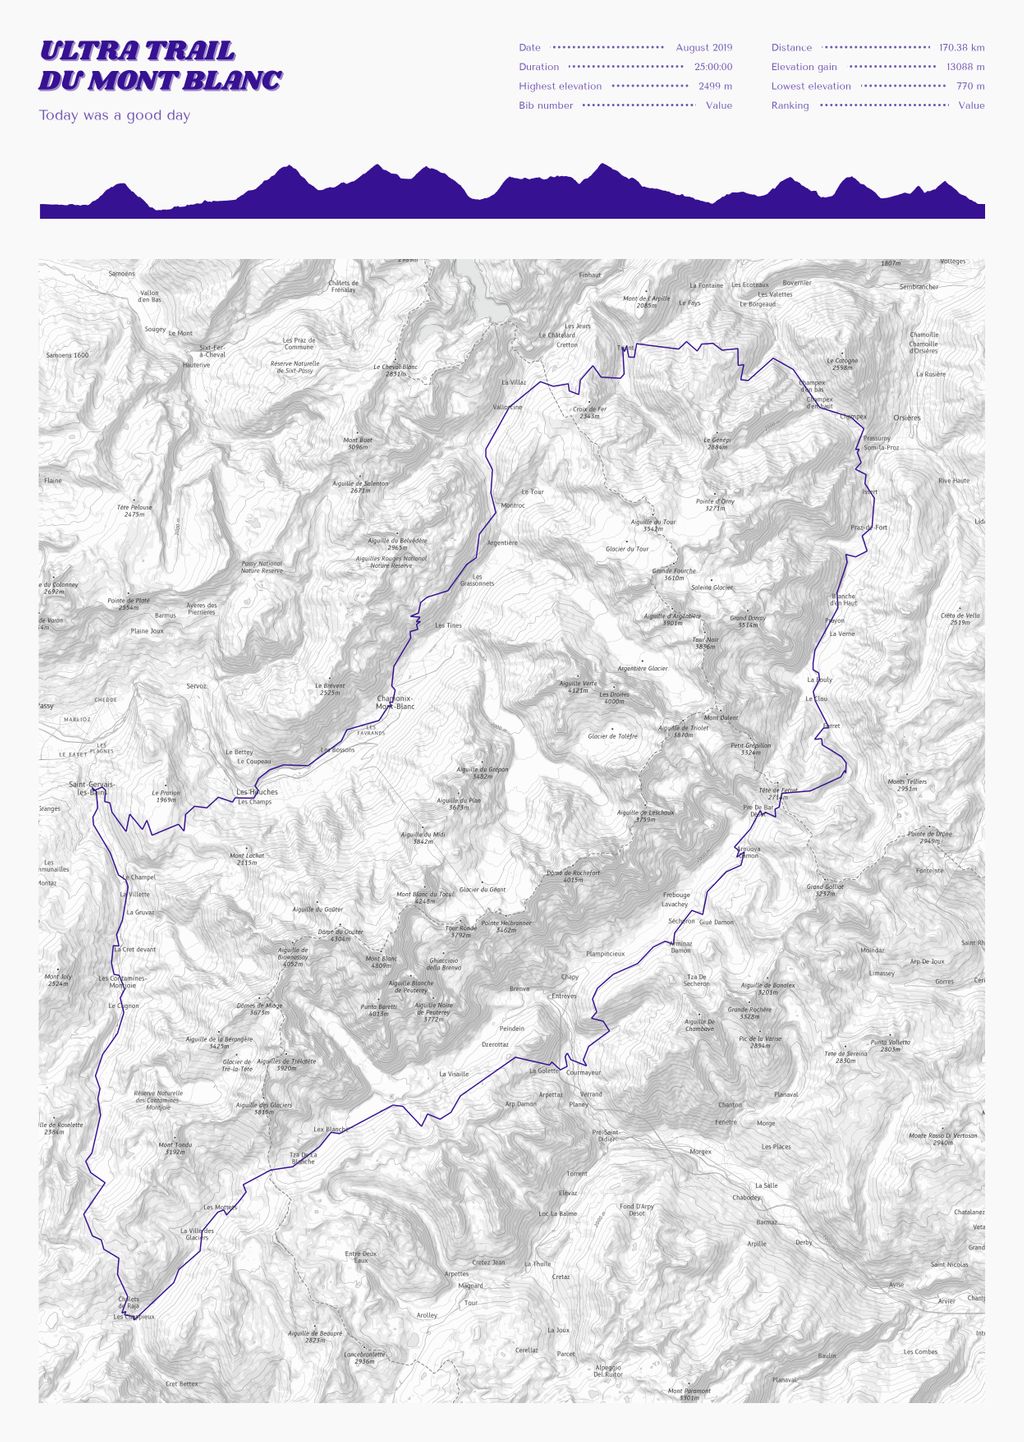 Póster con un mapa de Ultra Trail 
du Mont Blanc